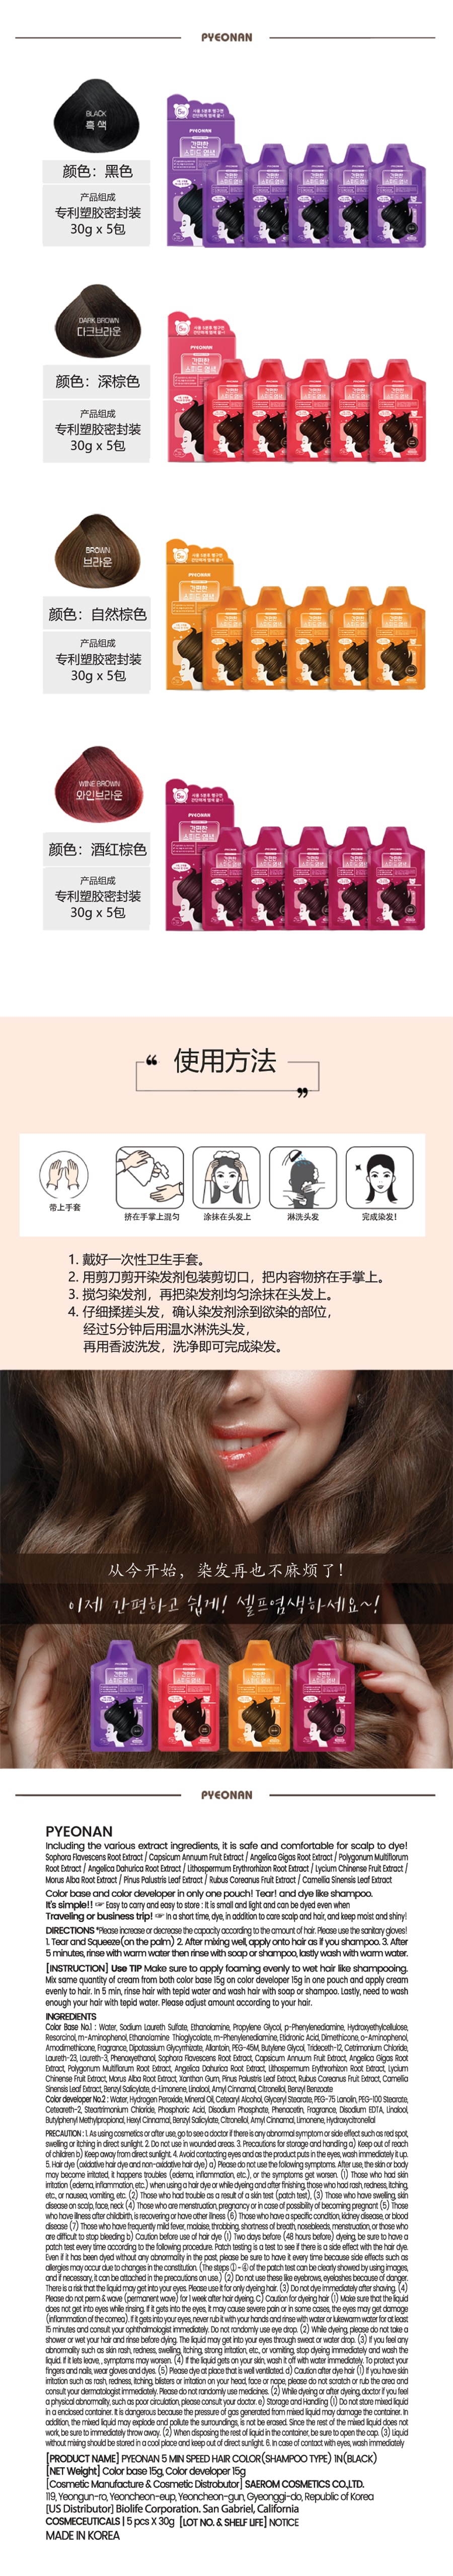 韓國 PYEONAN 5分鐘快速超簡單 香波型染髮劑 #酒紅棕 5包/盒